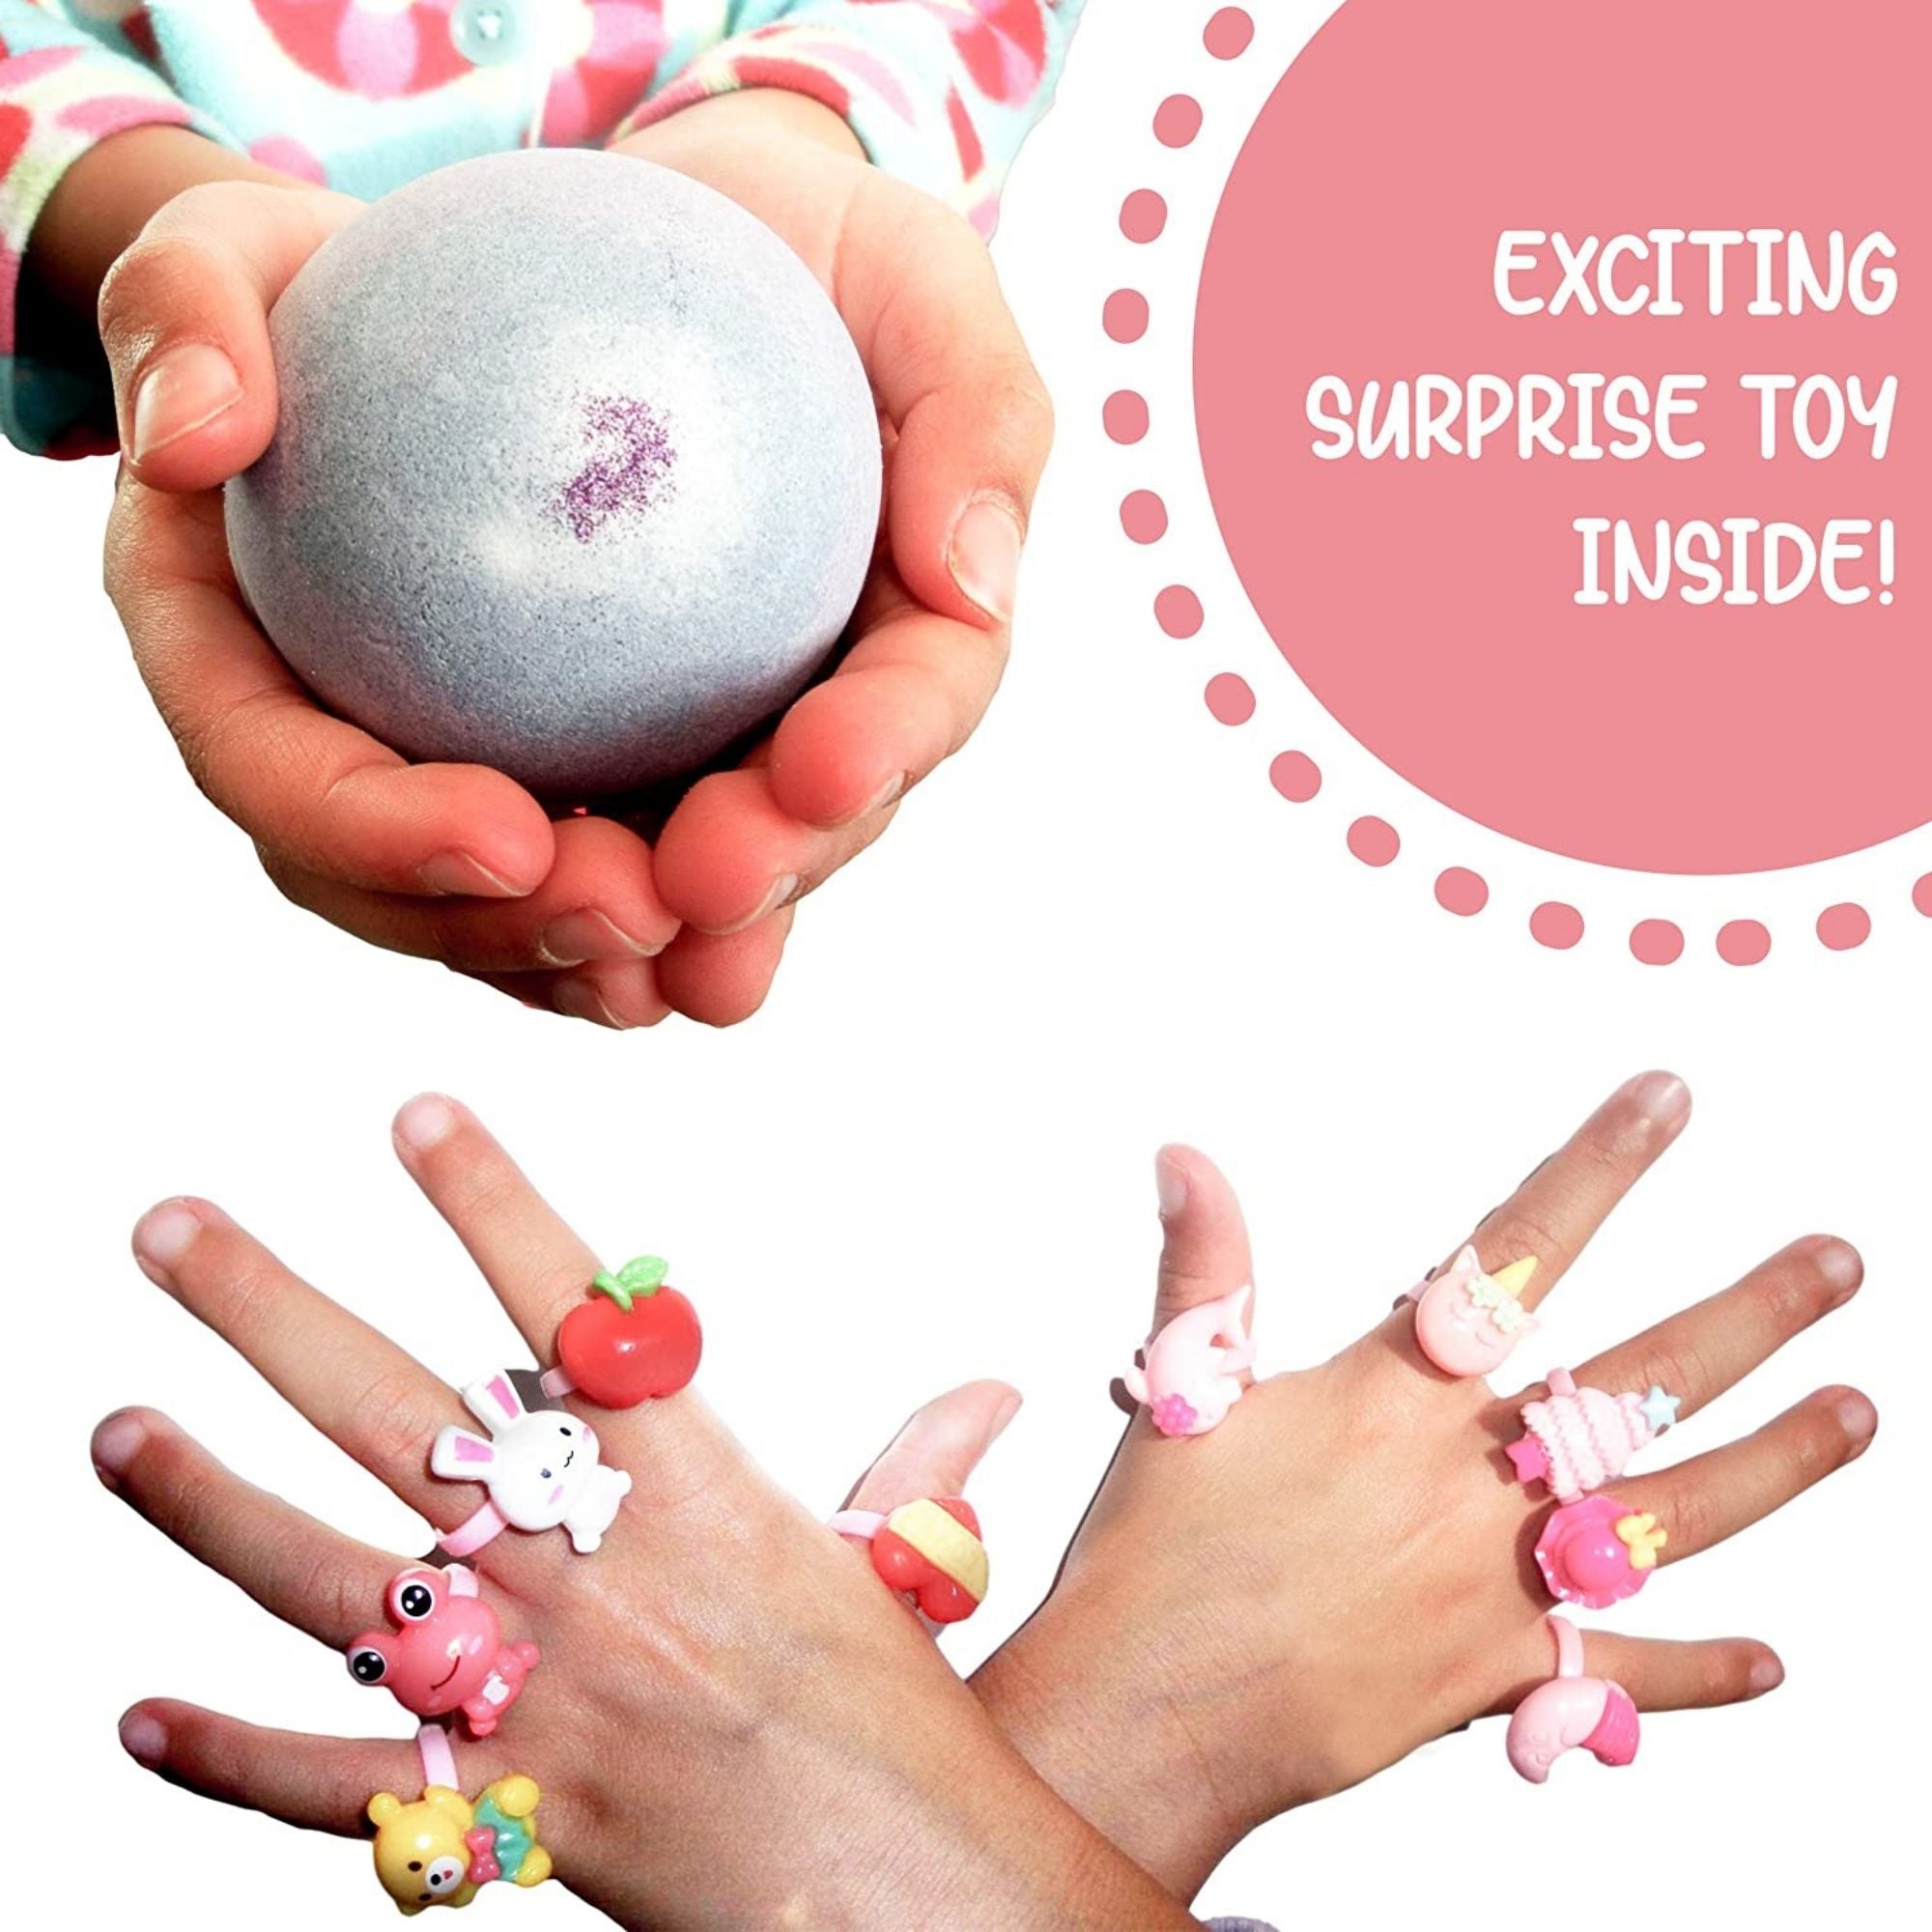 6 Squishy Toy Surprise Bubble Bath Bombs Set